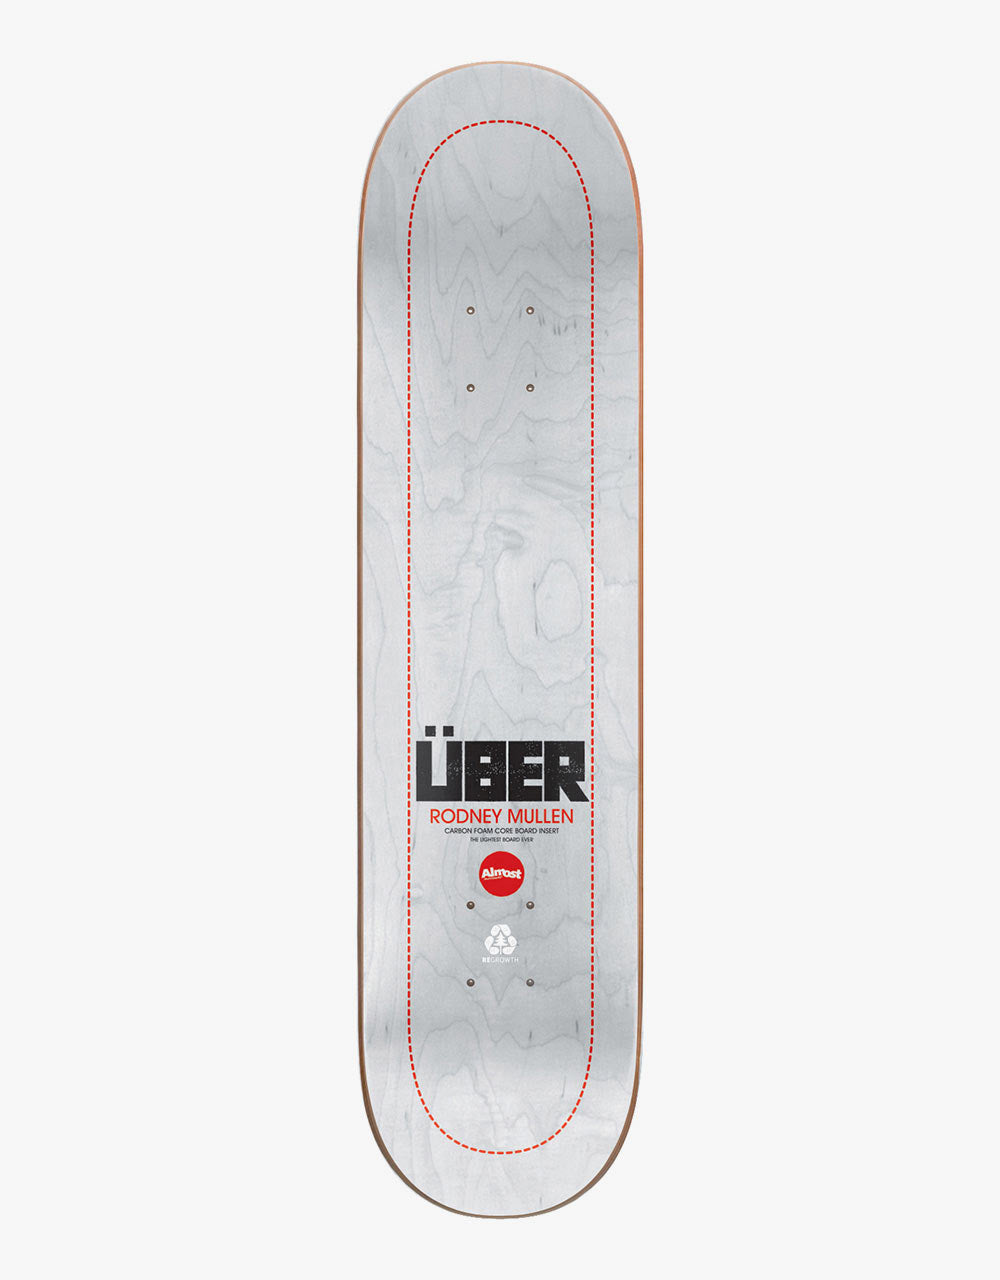 Almost Mullen Über White Skateboard Deck - 8.375"